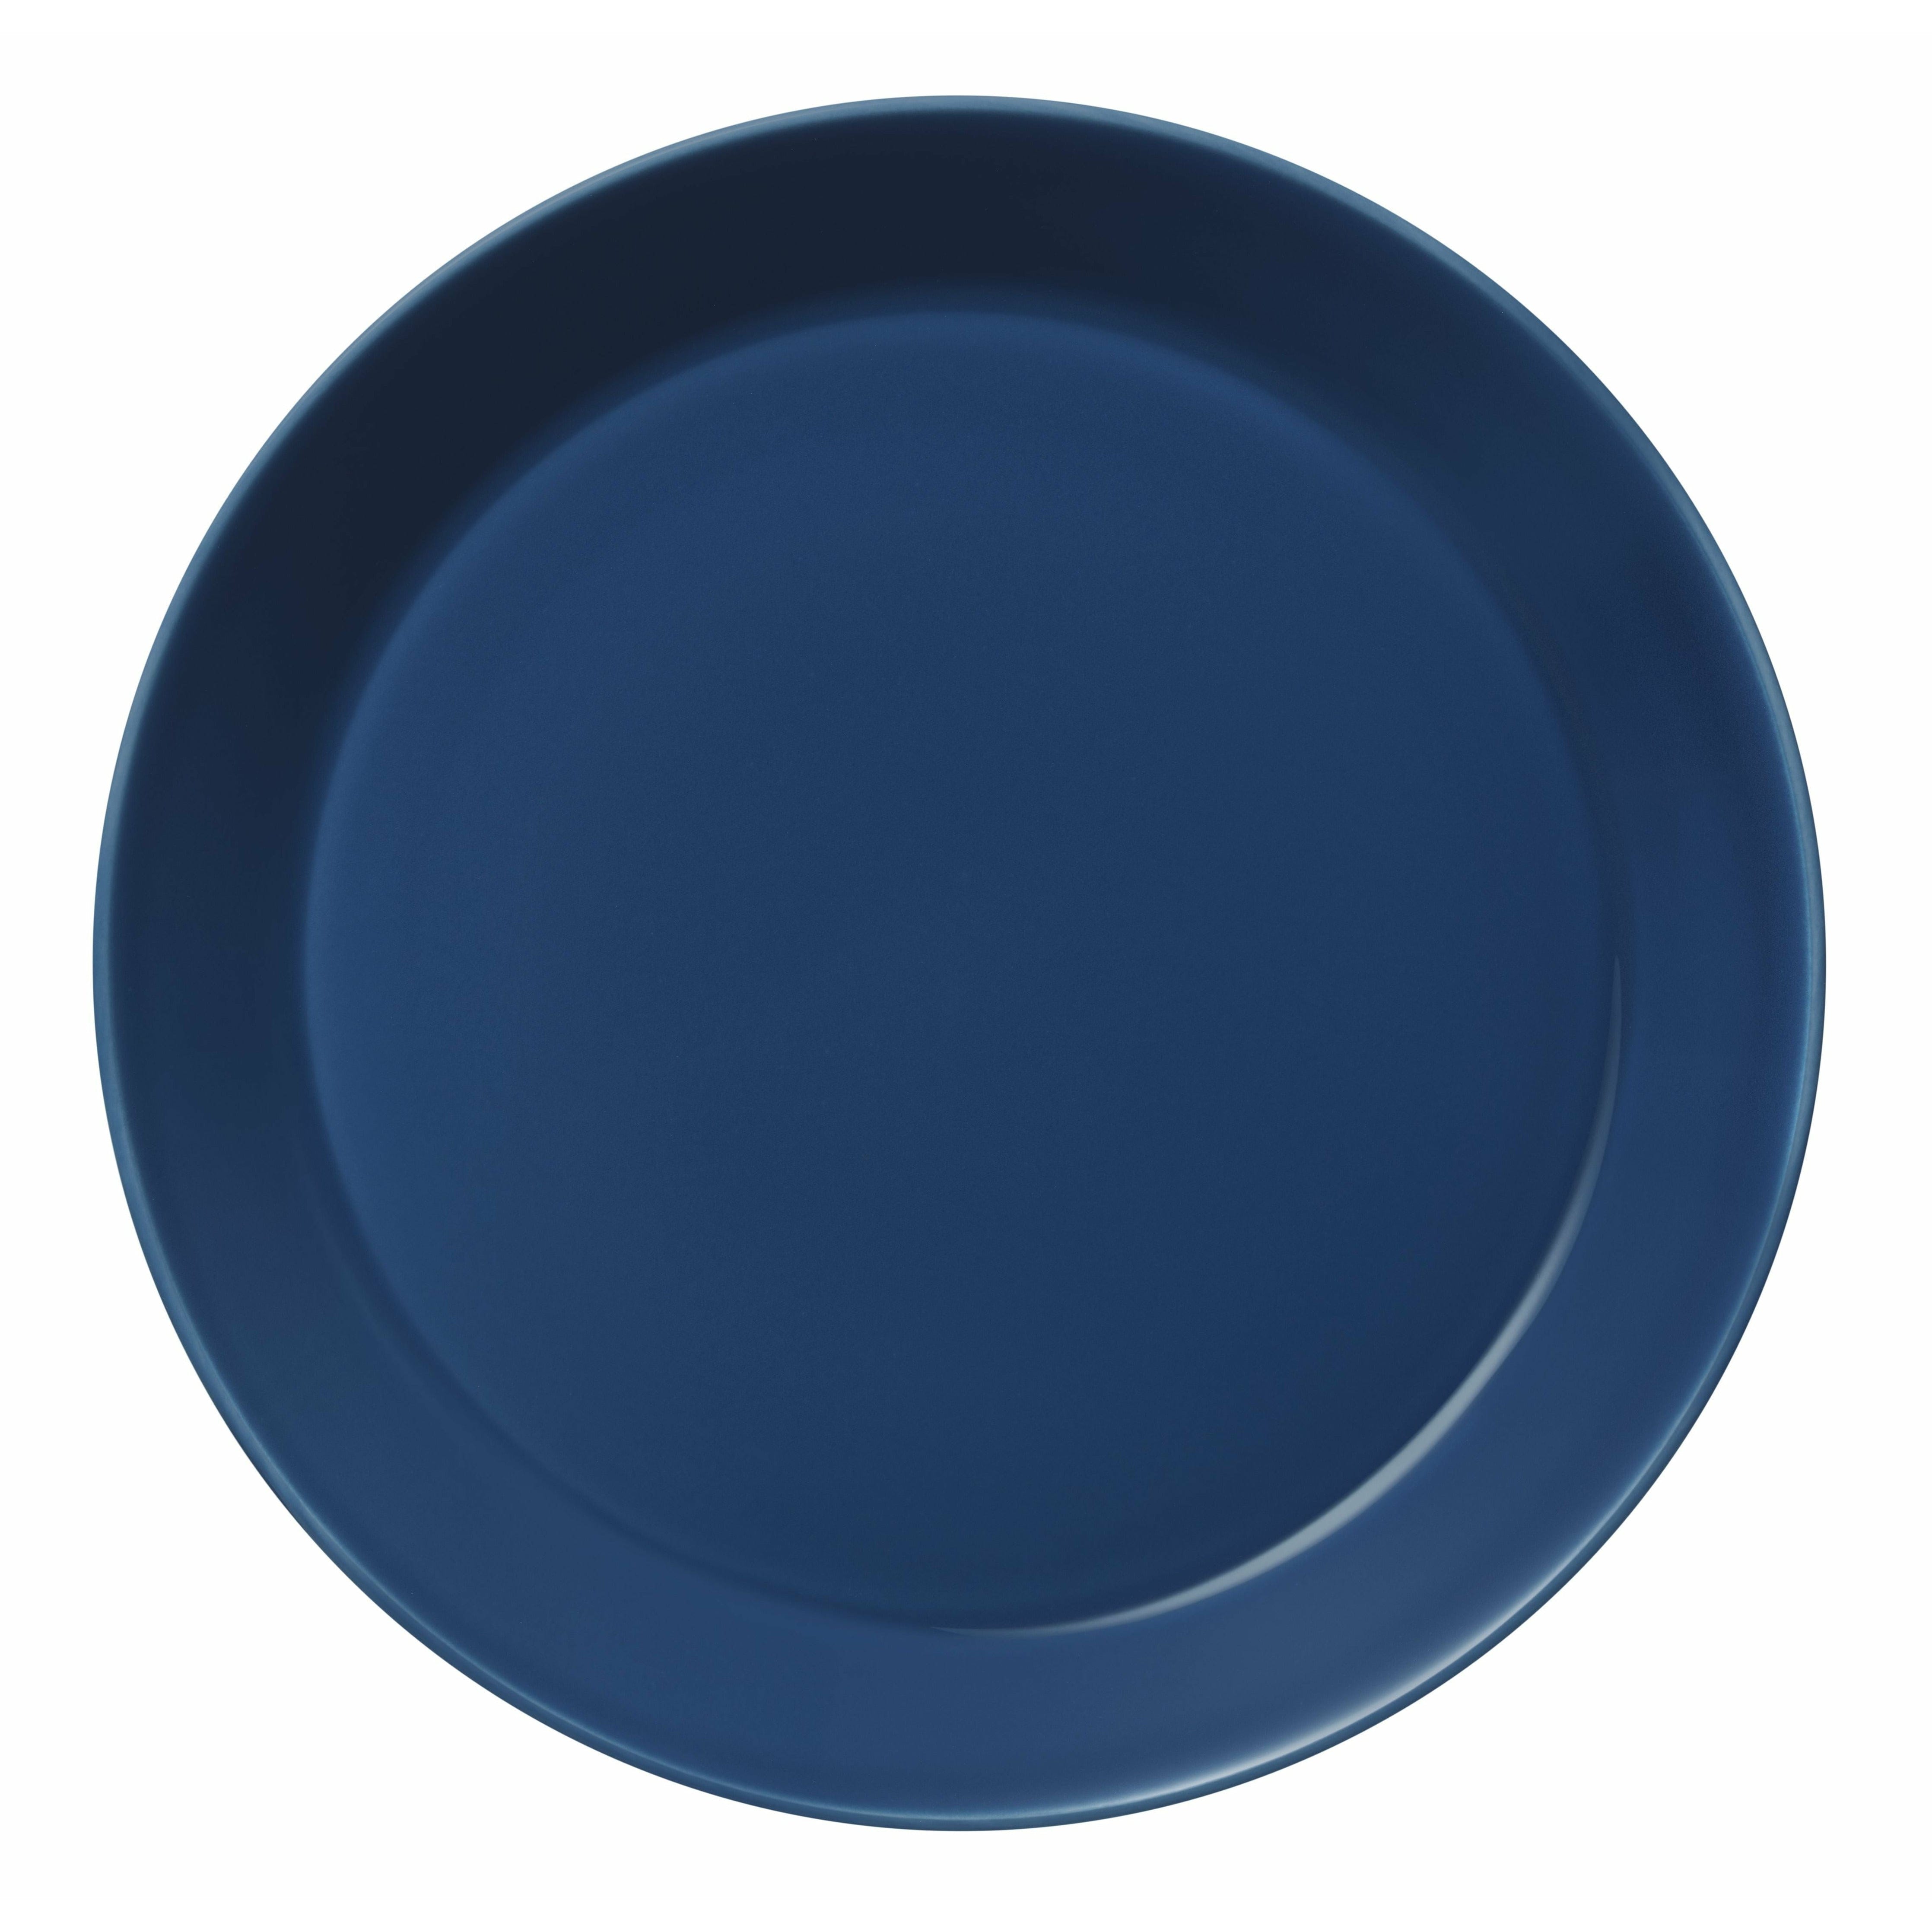 Iittala teema plate 26cm, vintage blå